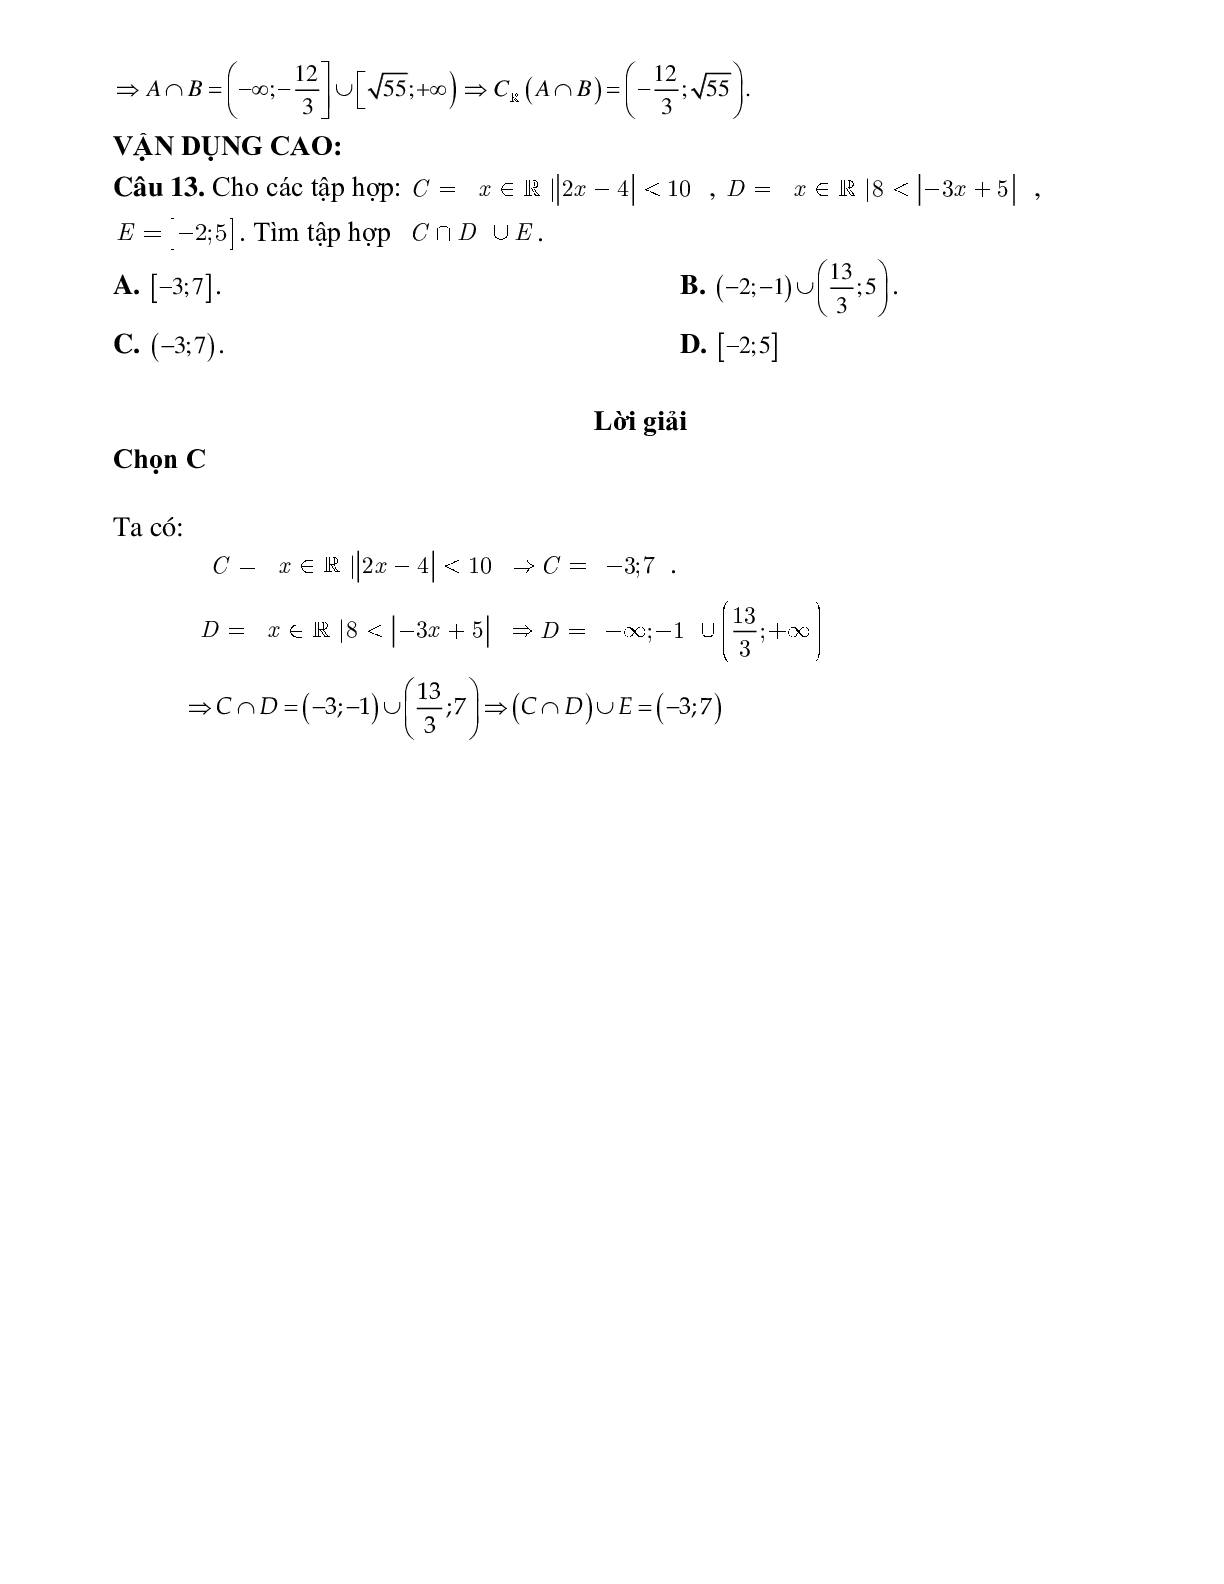 Bài tập tự luyện thực hiện hỗn hợp các phép toán với nhiều tập hợp Toán 10 (trang 3)